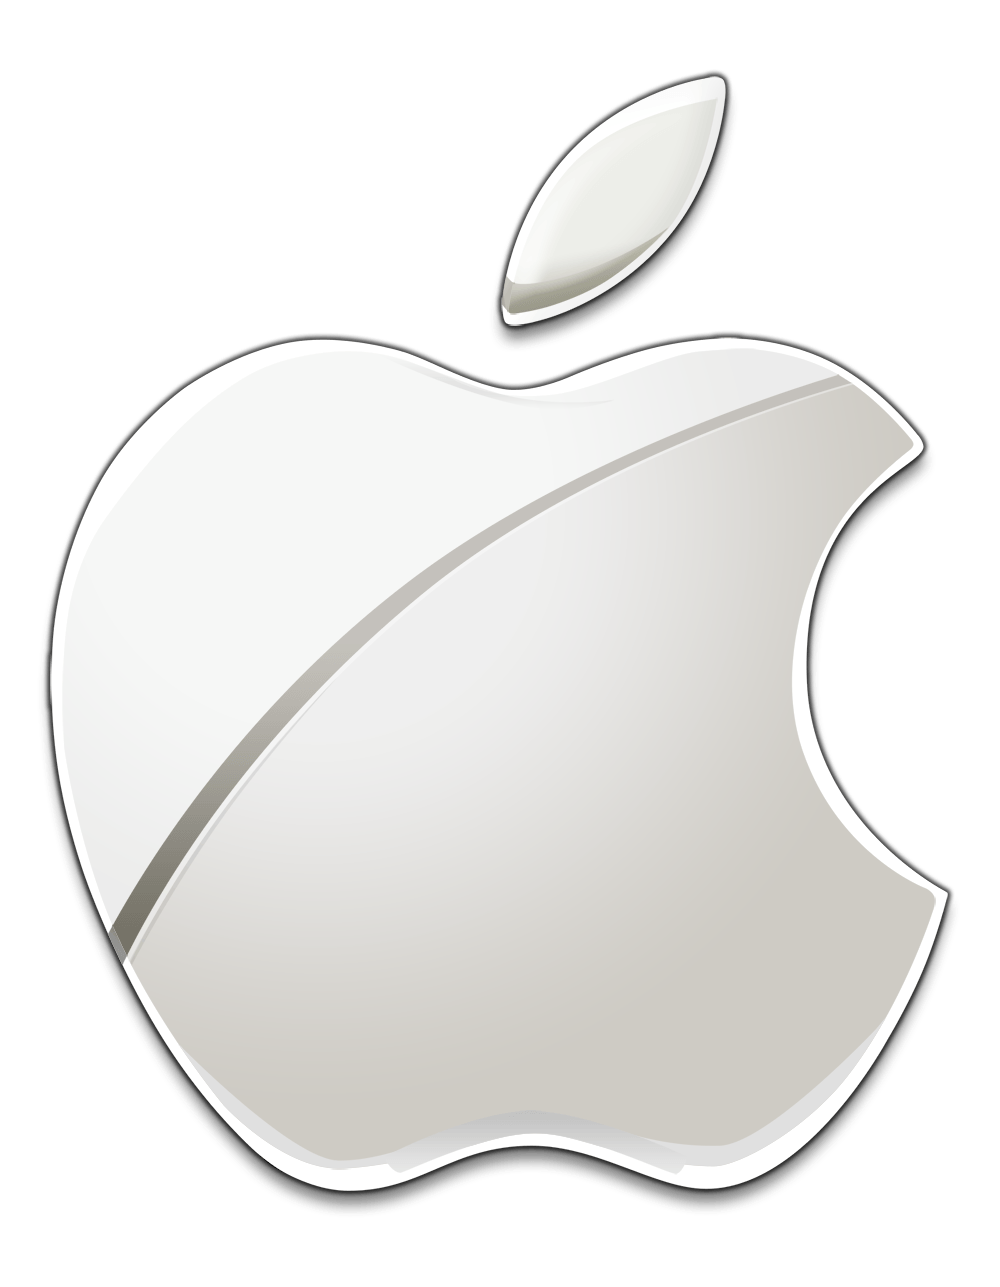 New Apple Logo - White Apple logo. Apple. Apple logo, Logos and Apple